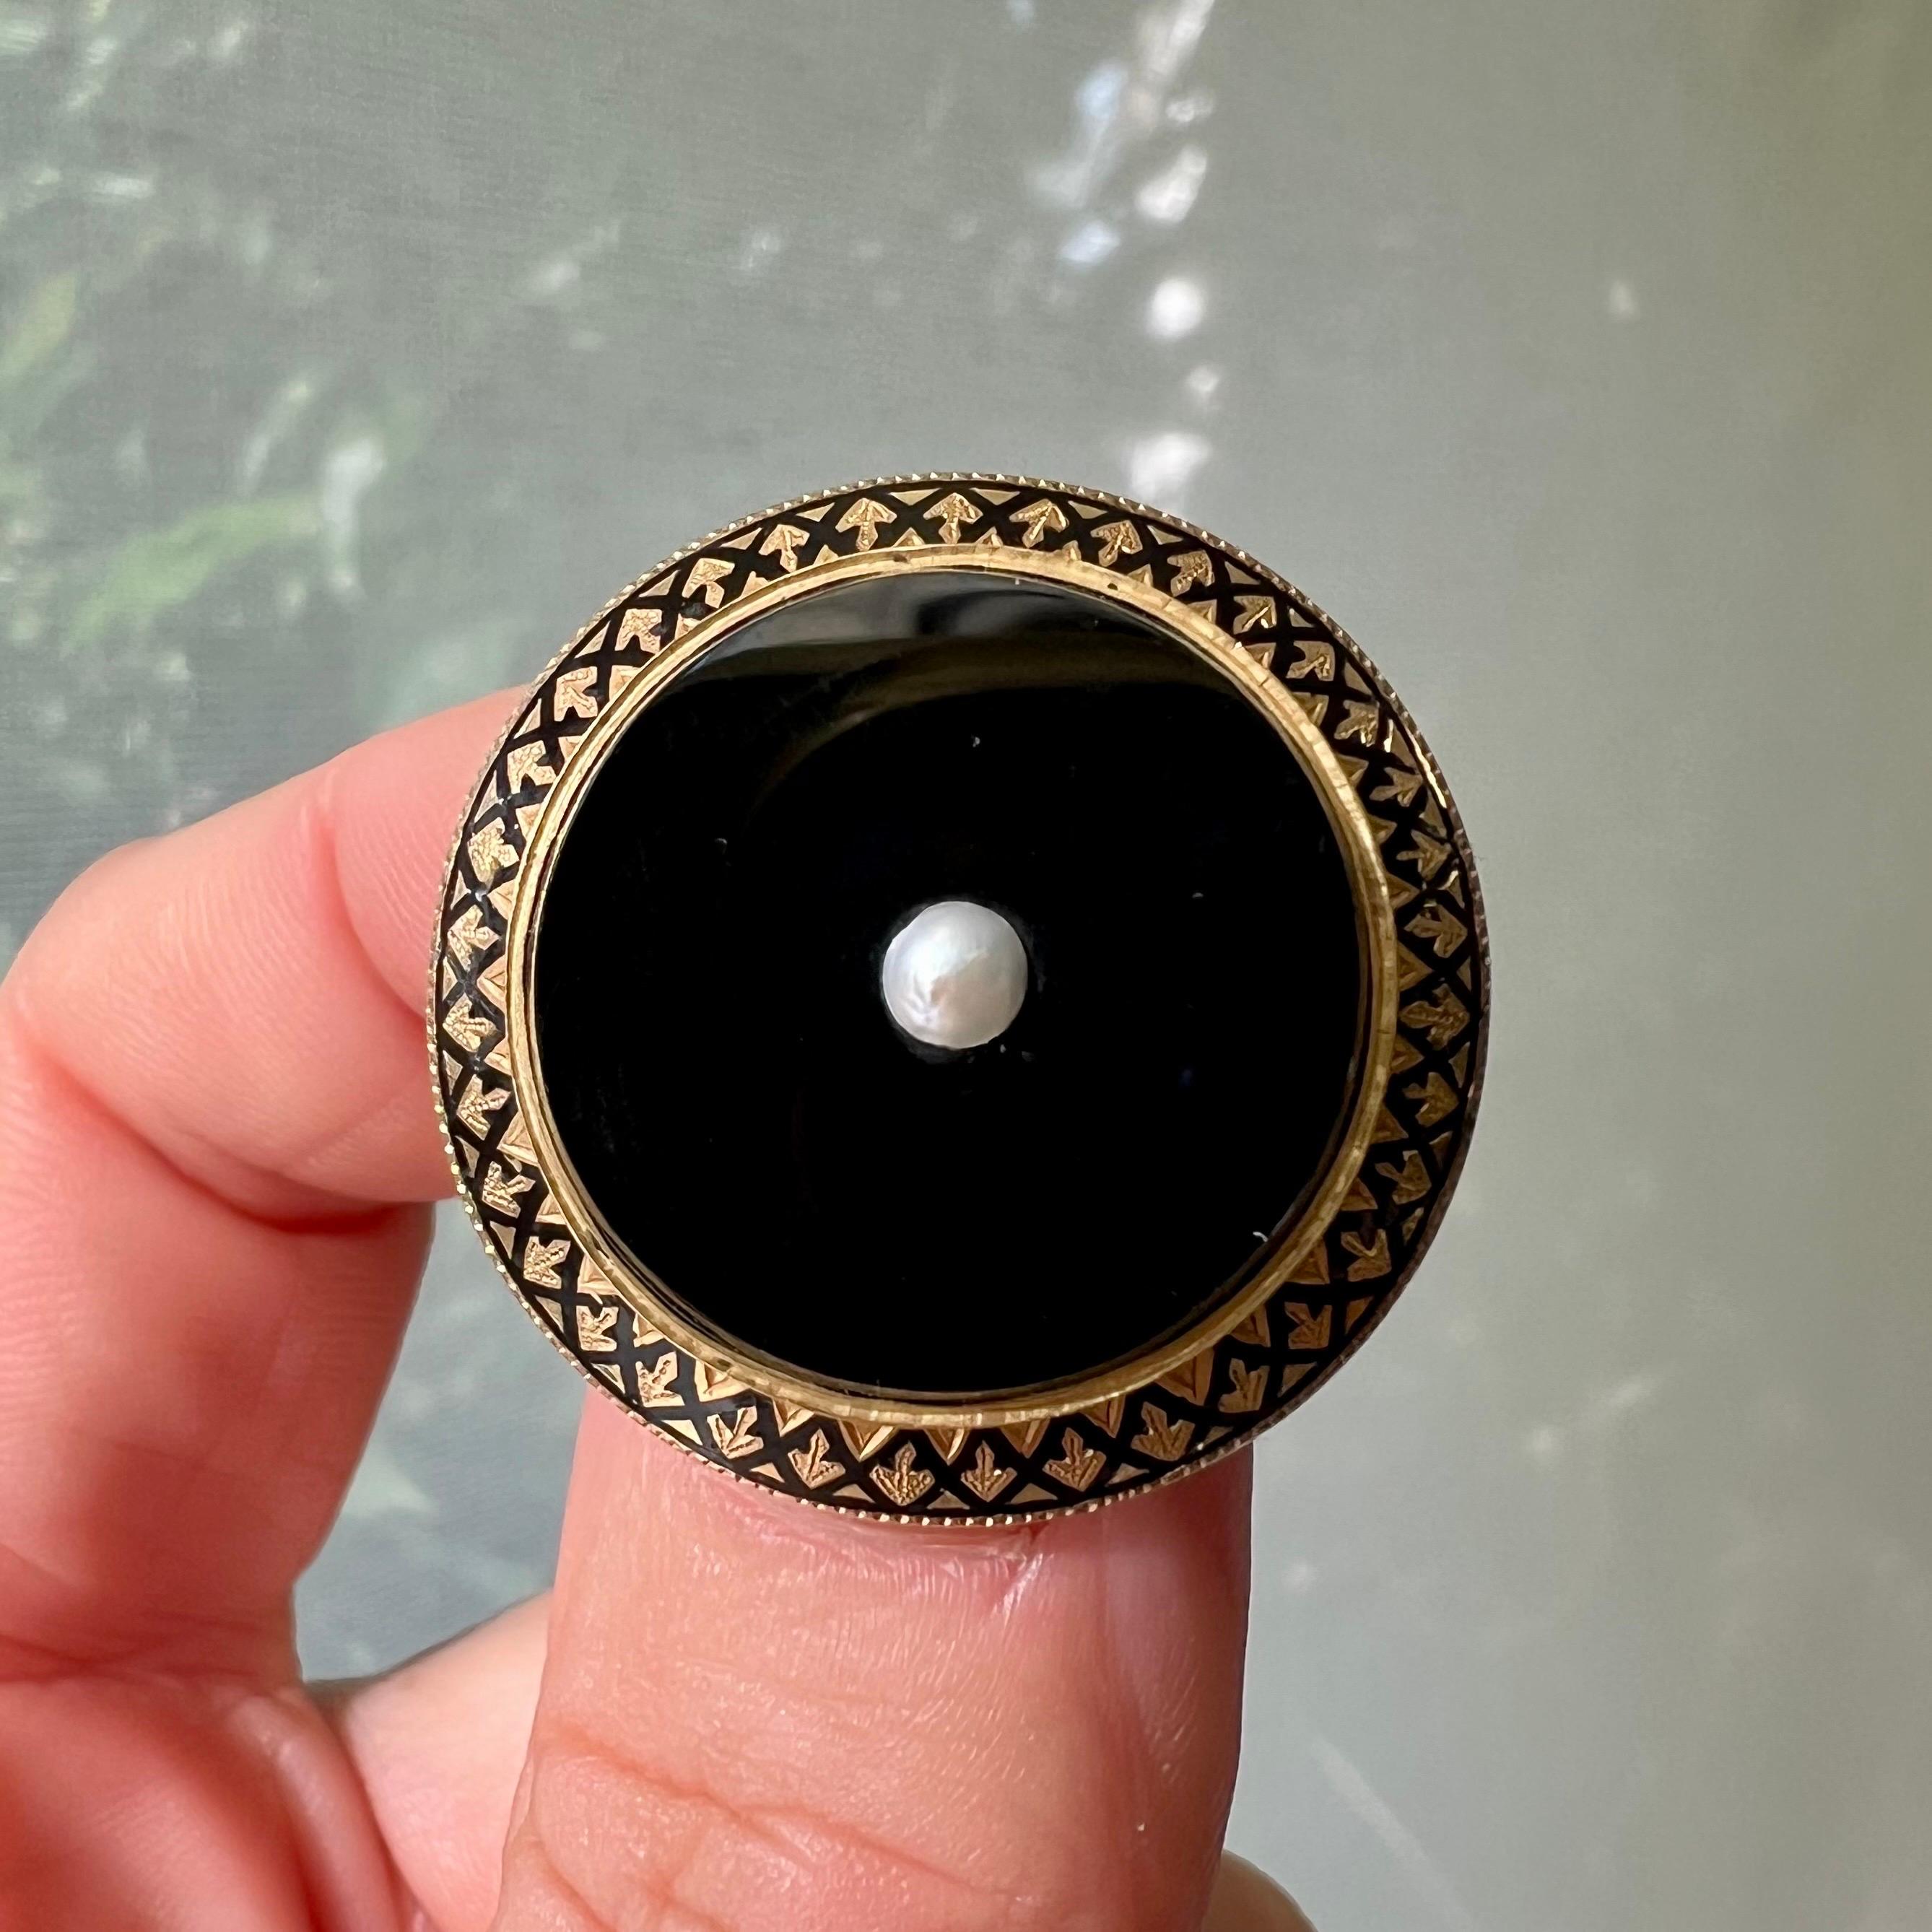 Diese runde Brosche aus antikem 18-karätigem Gold und Emaille ist mit schwarzem Onyx gestaltet und in der Mitte mit einer Saatperle besetzt. Der Rand der Brosche ist mit schwarzer Emaille und einem gedrehten Goldrand verziert. Die Anstecknadel auf